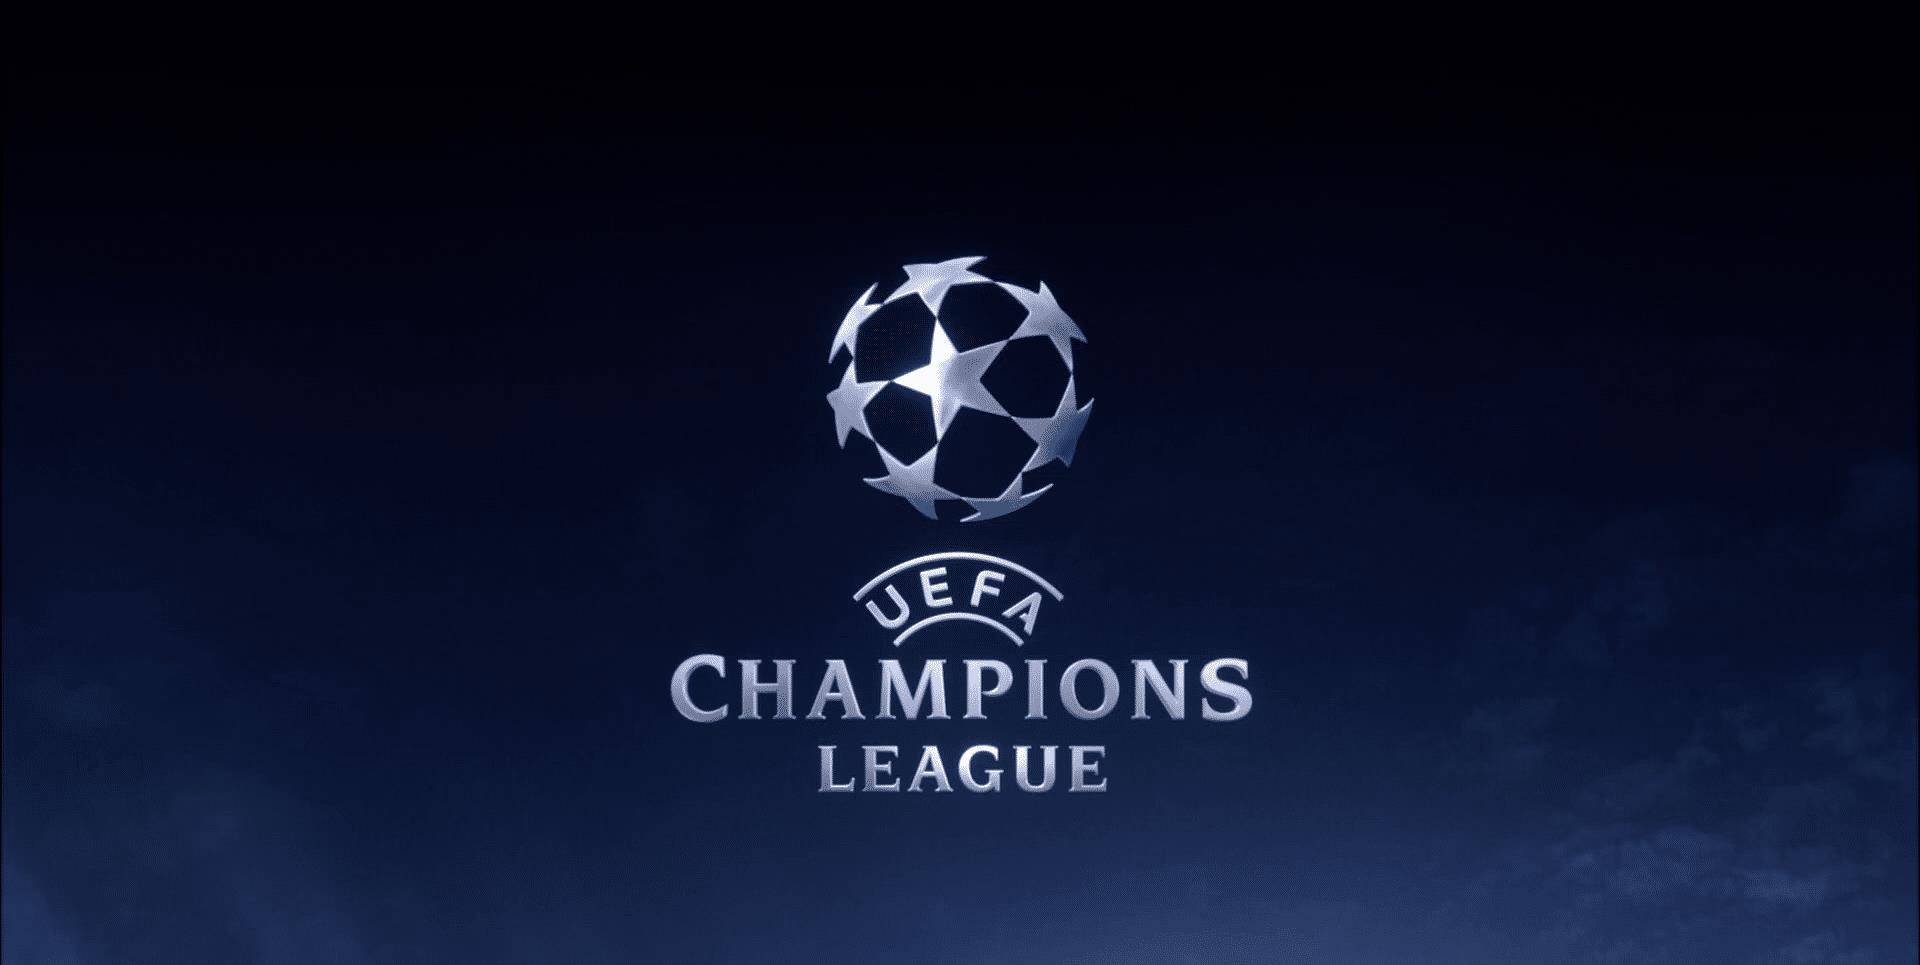 【168sports】[老虎评球]欧冠 巴黎圣日耳曼 对阵 皇家社会 拉齐奥 对阵 拜仁慕尼黑 赛事分